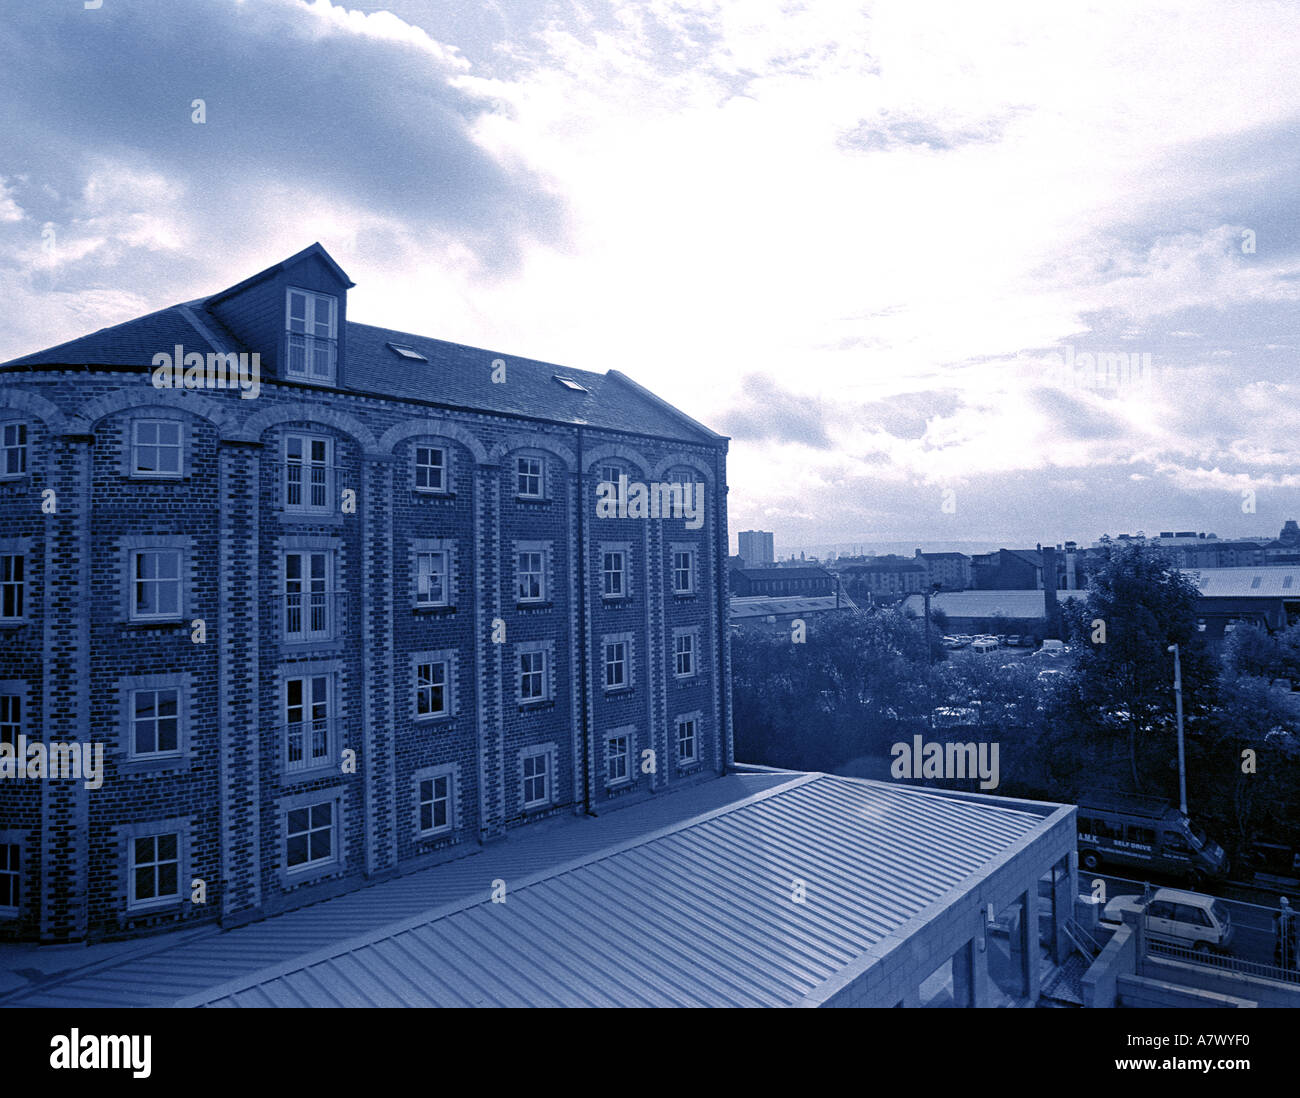 Colore blu cielo che guarda verso il sole con architettonico meraviglioso vecchio edificio in mattoni e la città di Glasgow Foto Stock